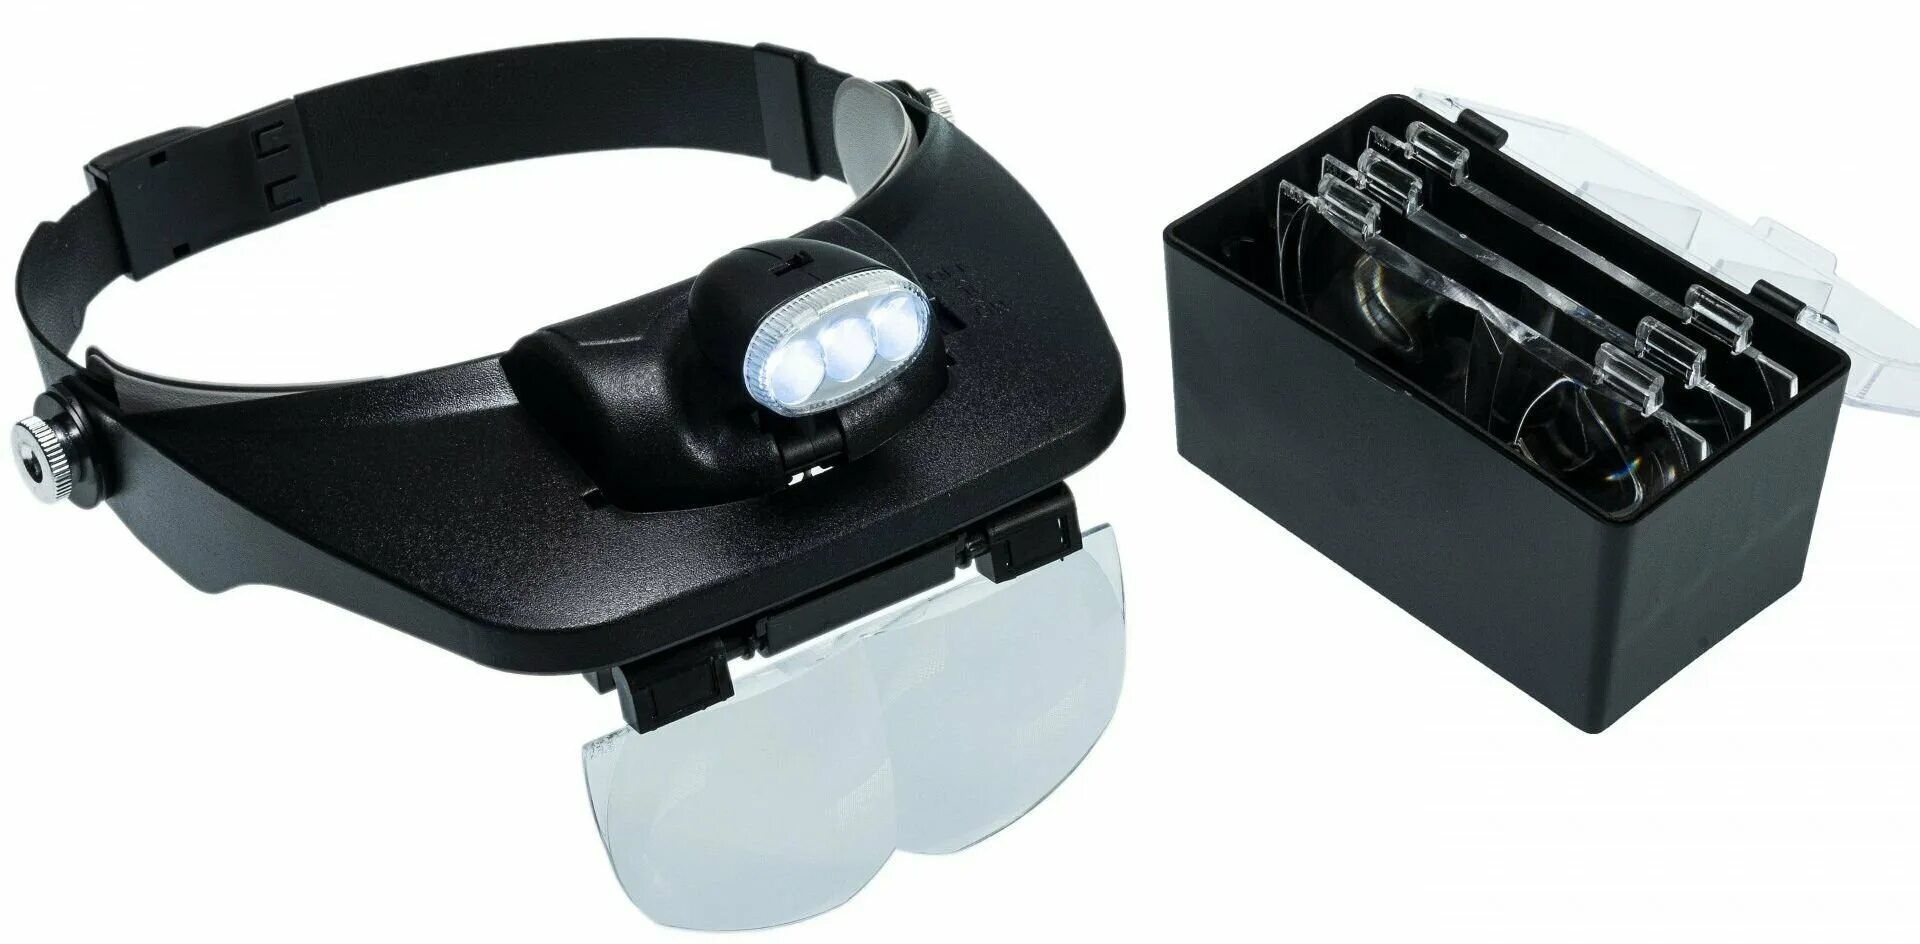 Увеличительные очки лупа. Монтажные бинокулярные очки mg81001-. Лупа налобная Kromatech mg81001-a, 1,2/1,8/2,5/3,5х, с подсветкой (2 led). Лупа налобная 20x бинокулярная (очки) с подсветкой (2 led) mg9892a-II. Лупа MG 81001-H С led подсветкой.